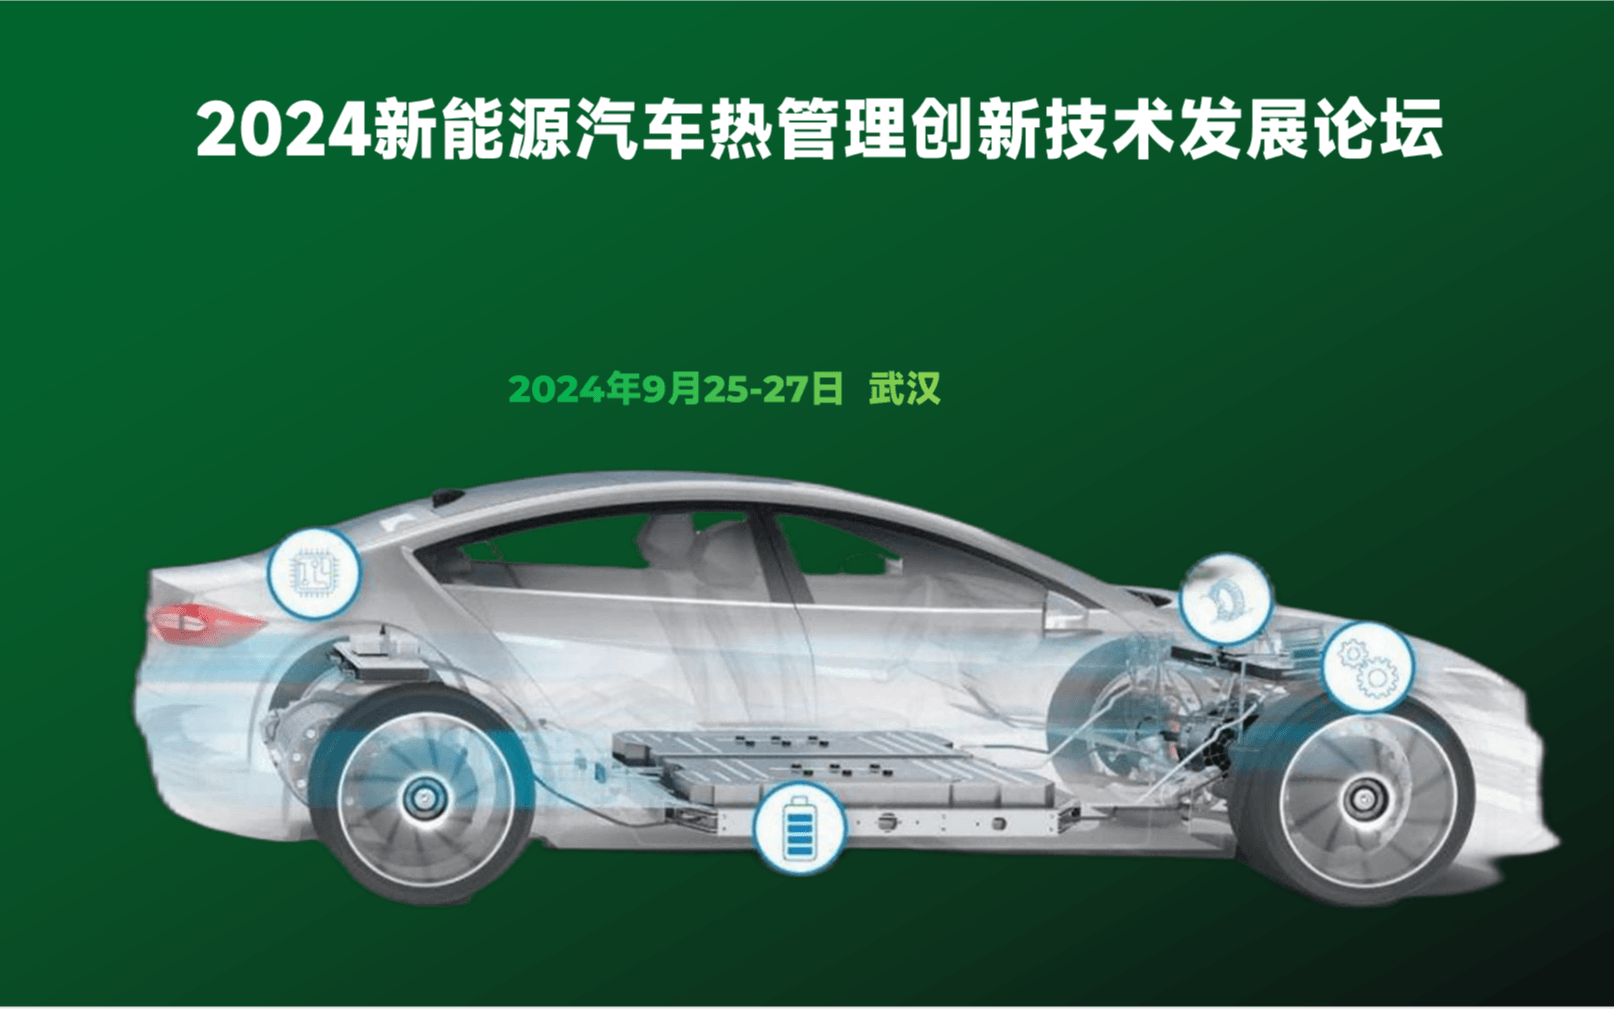 2024新能源汽车热管理创新技术发展论坛